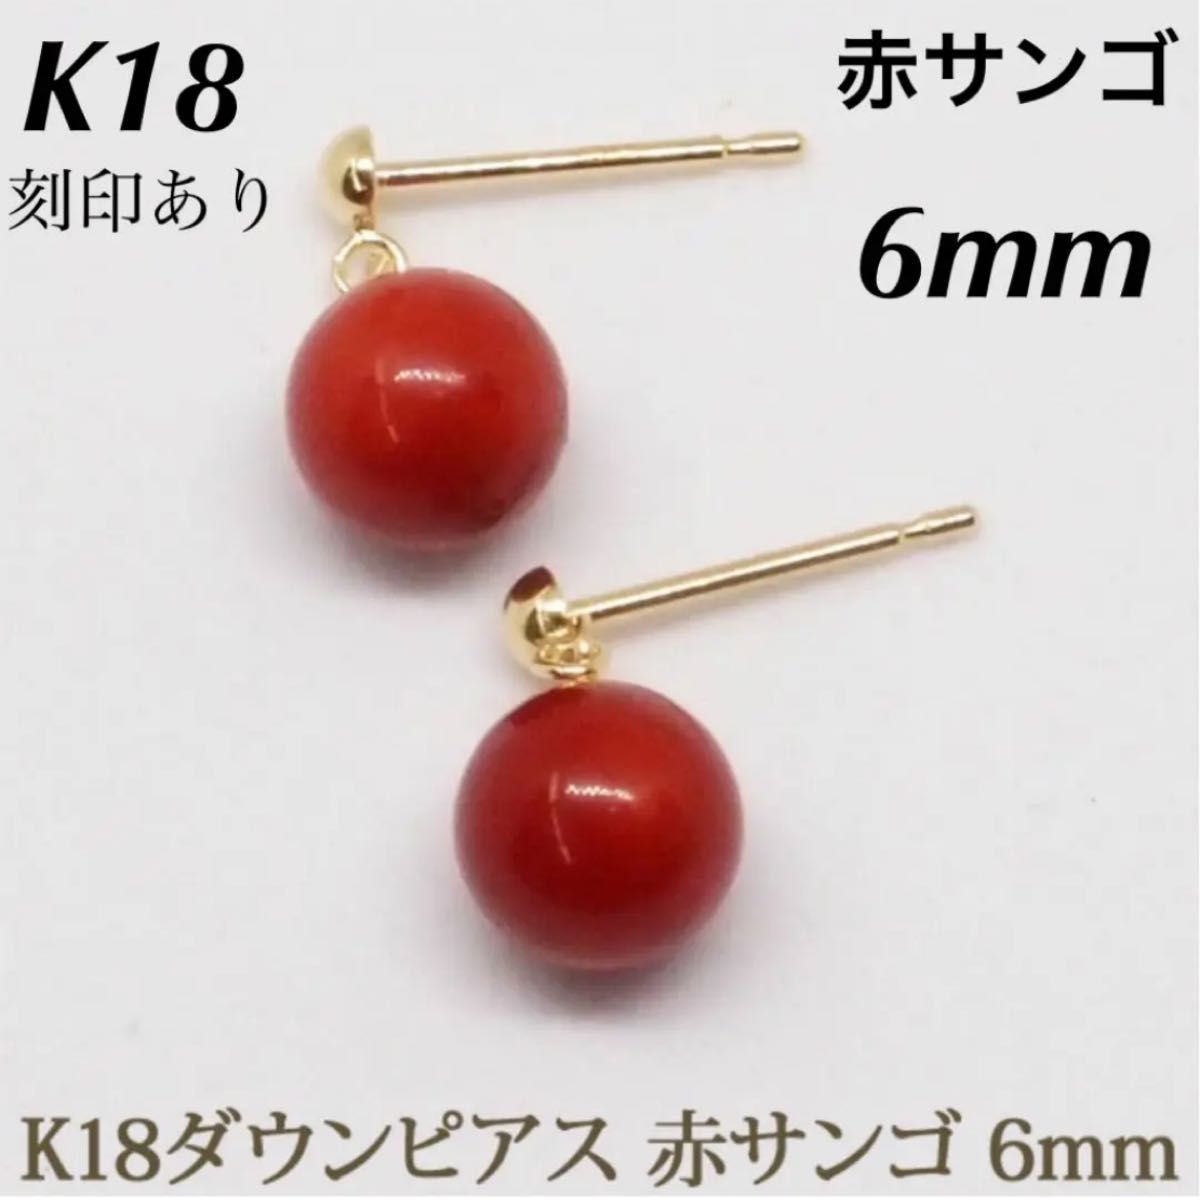 新品 K18 18金 18k 赤珊瑚 イエローゴールド ピアス  刻印あり 上質 日本製 ペア